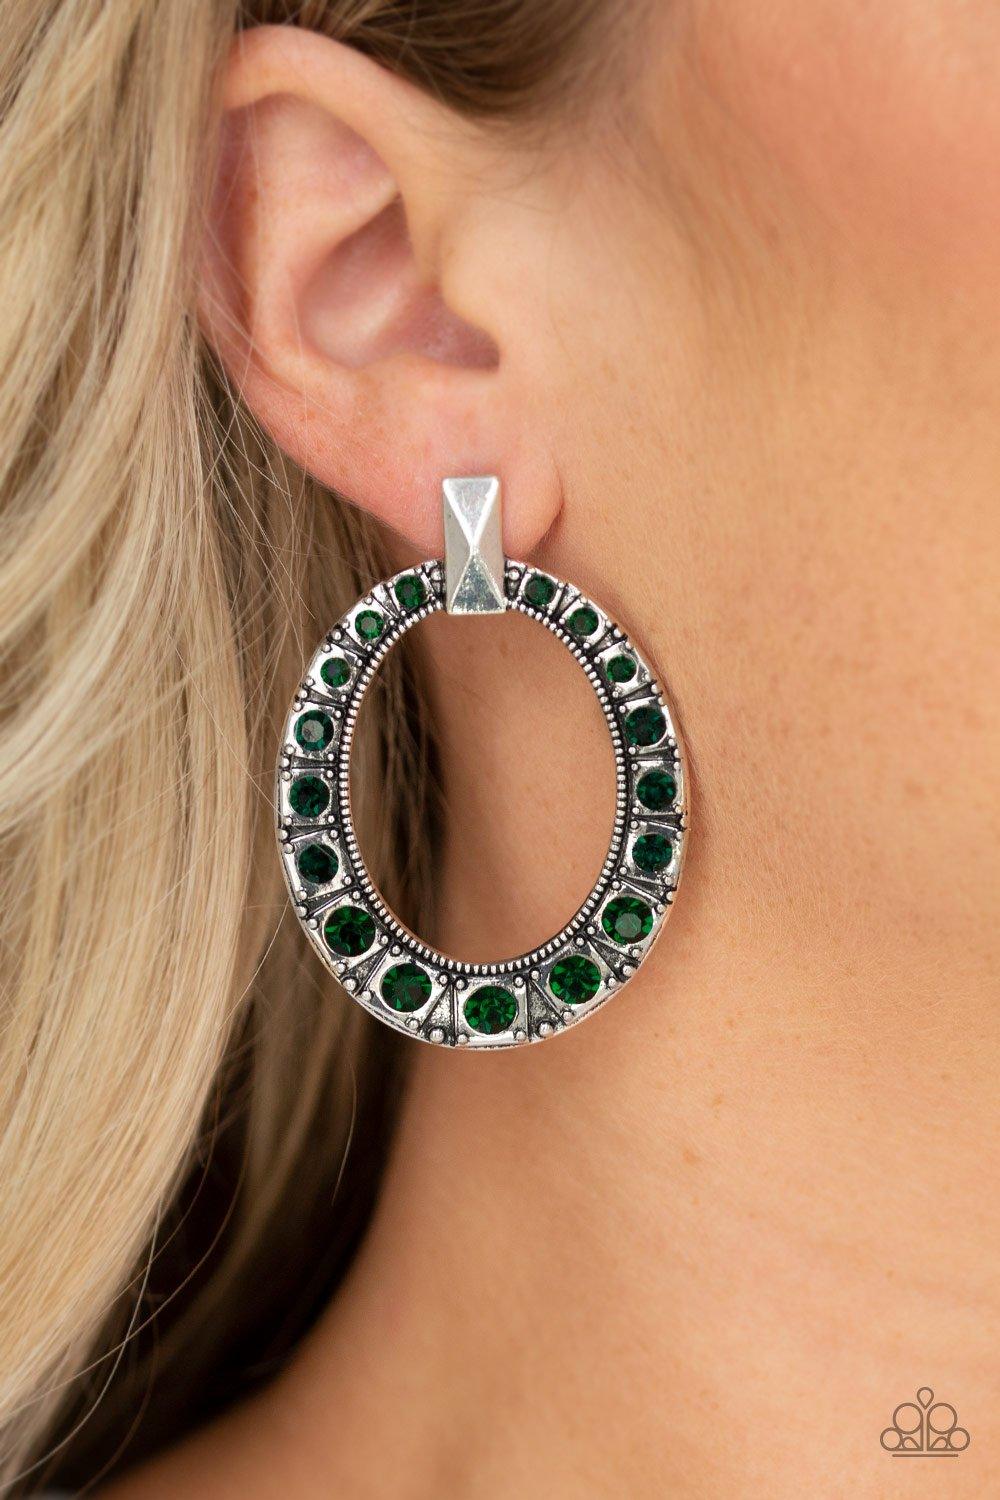 All For GLOW Green Earrings - Jewelry By Bretta - Jewelry by Bretta